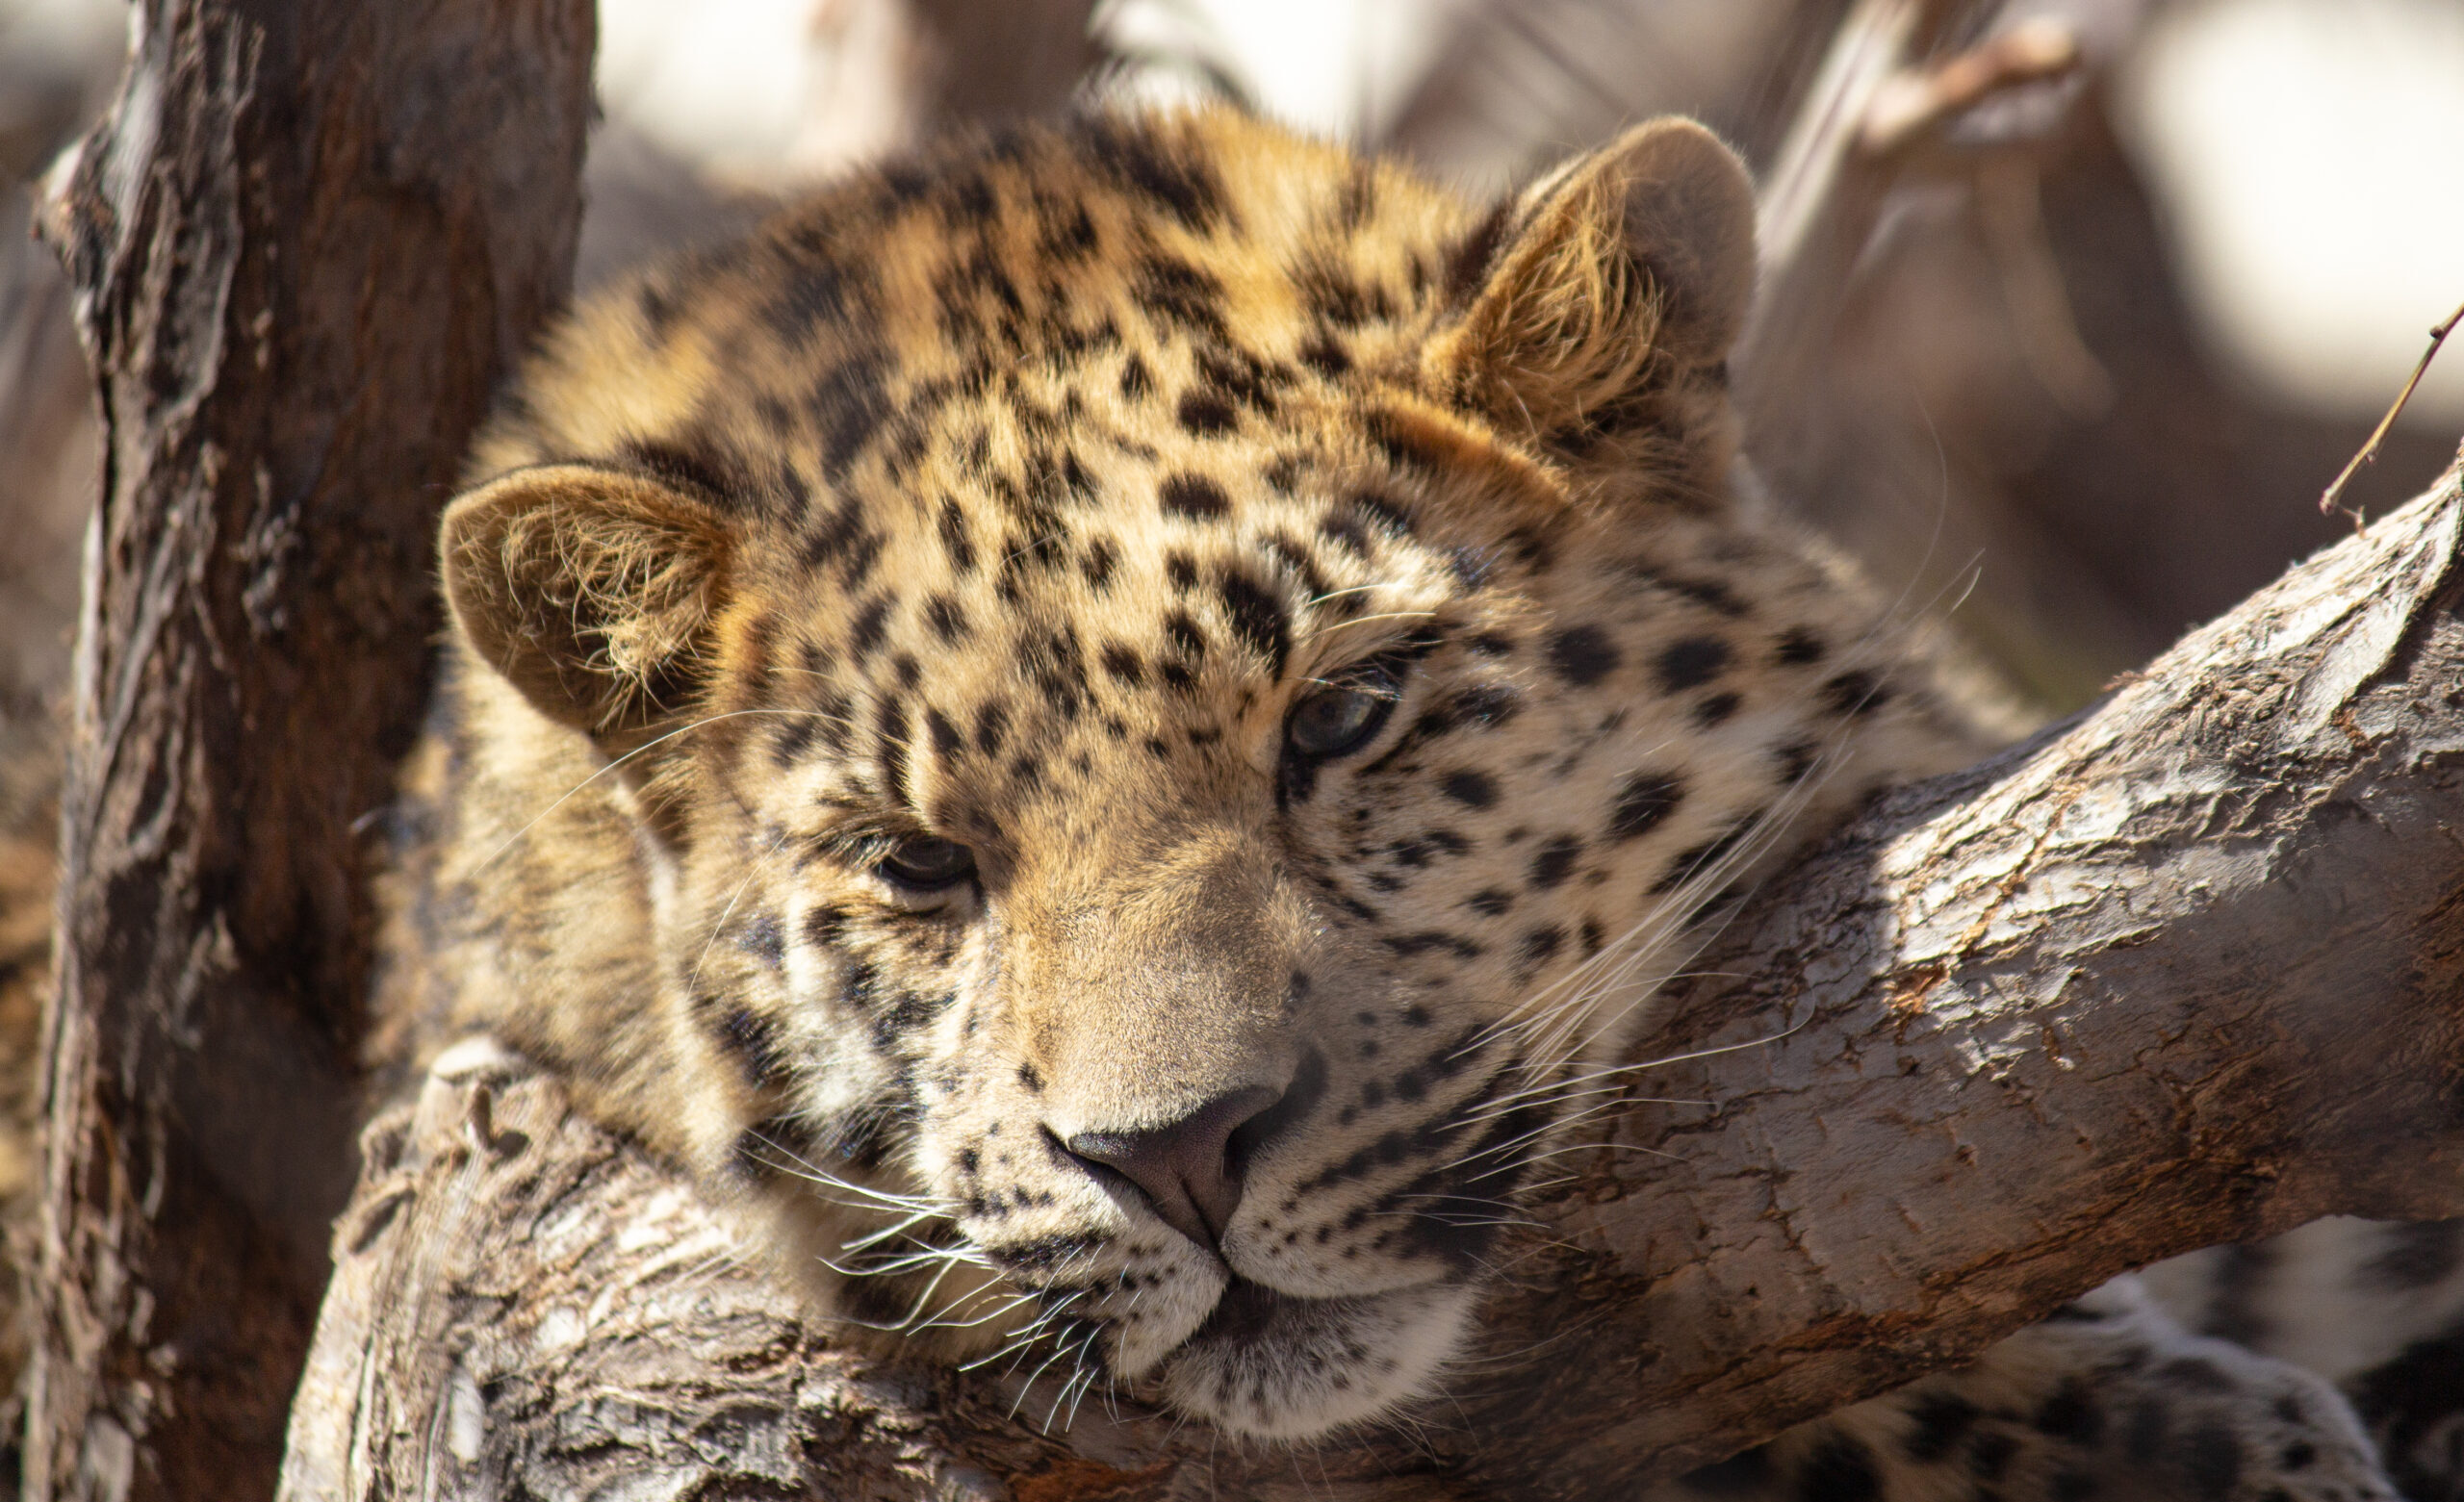 Leopard relaxing